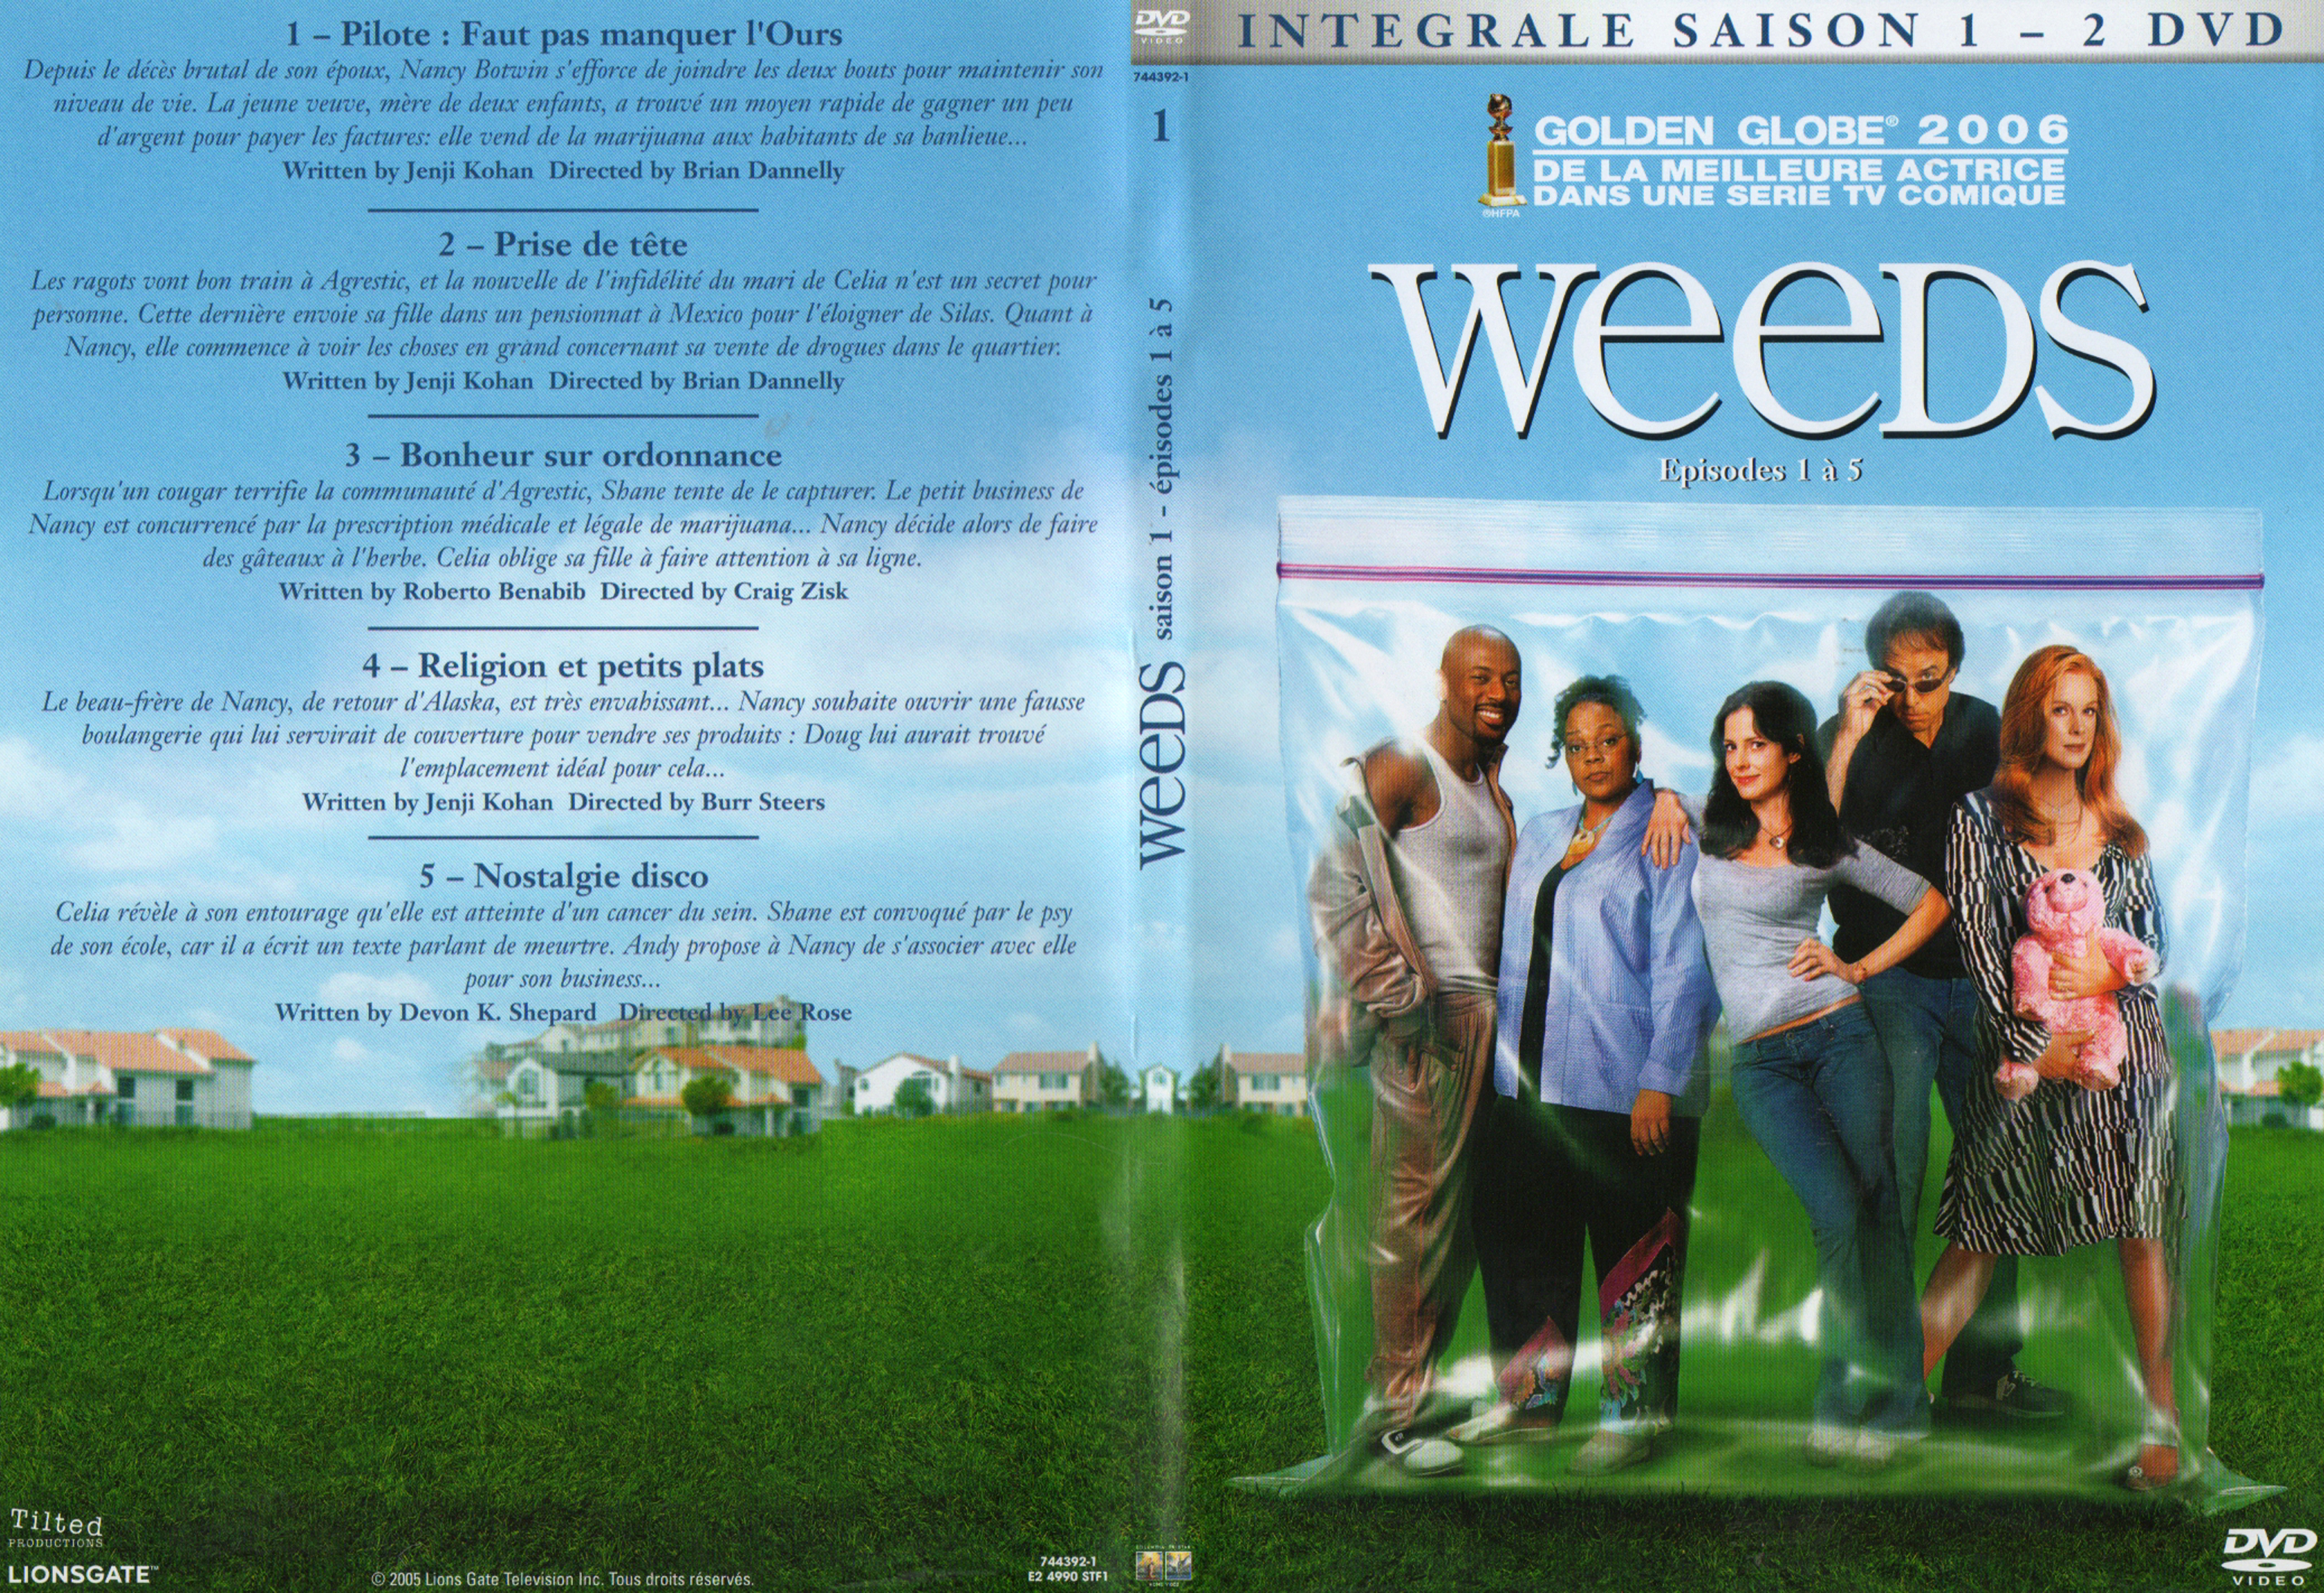 Jaquette DVD Weeds saison 1 DVD 1